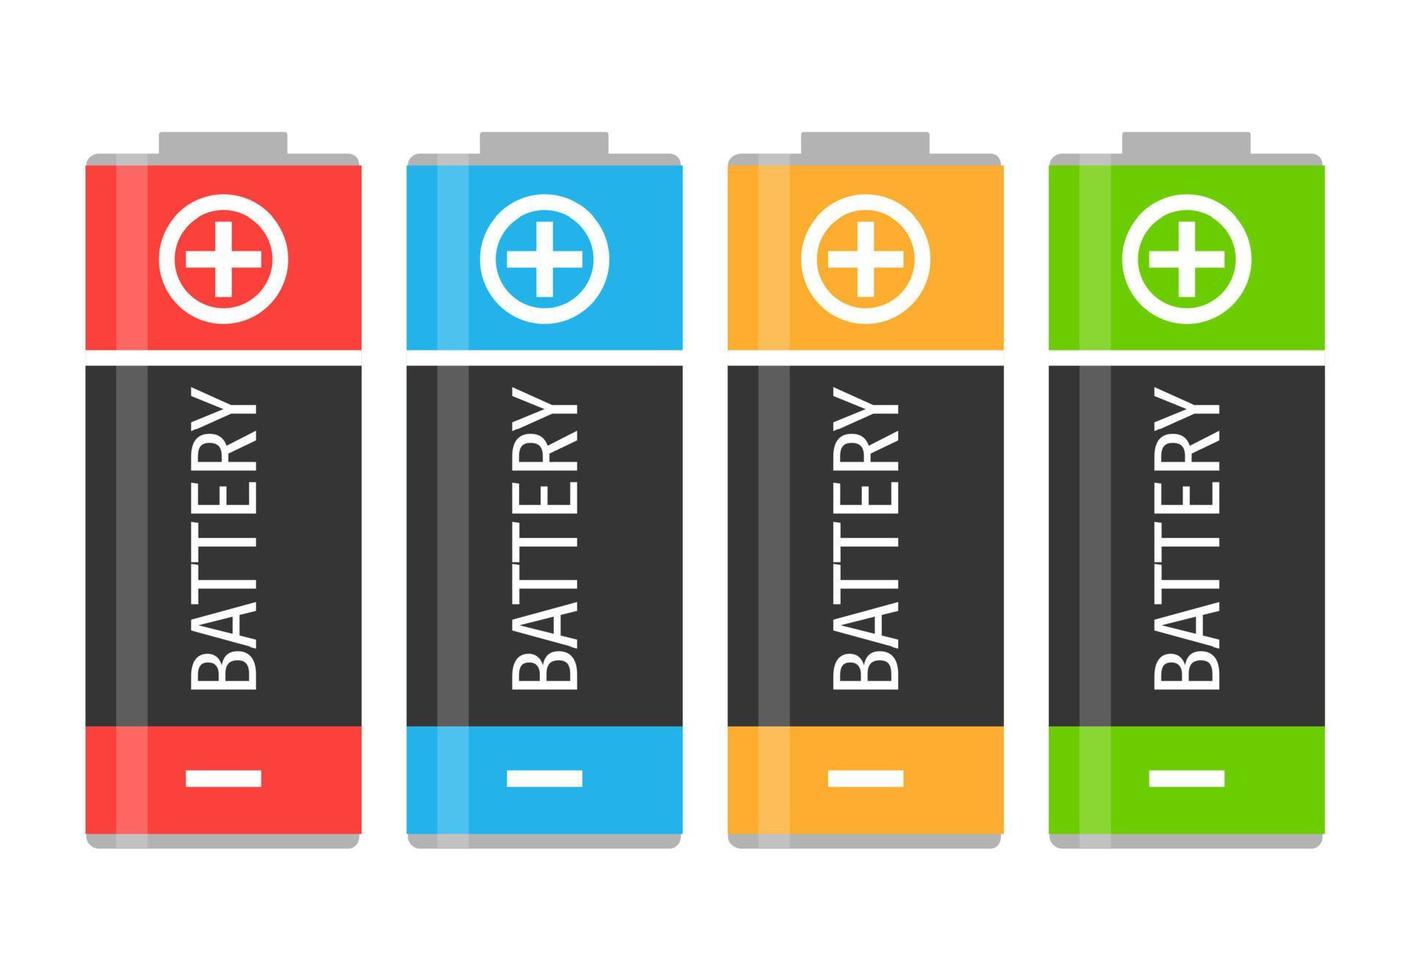 un' impostato di quattro colorato batterie. vettore illustrazione